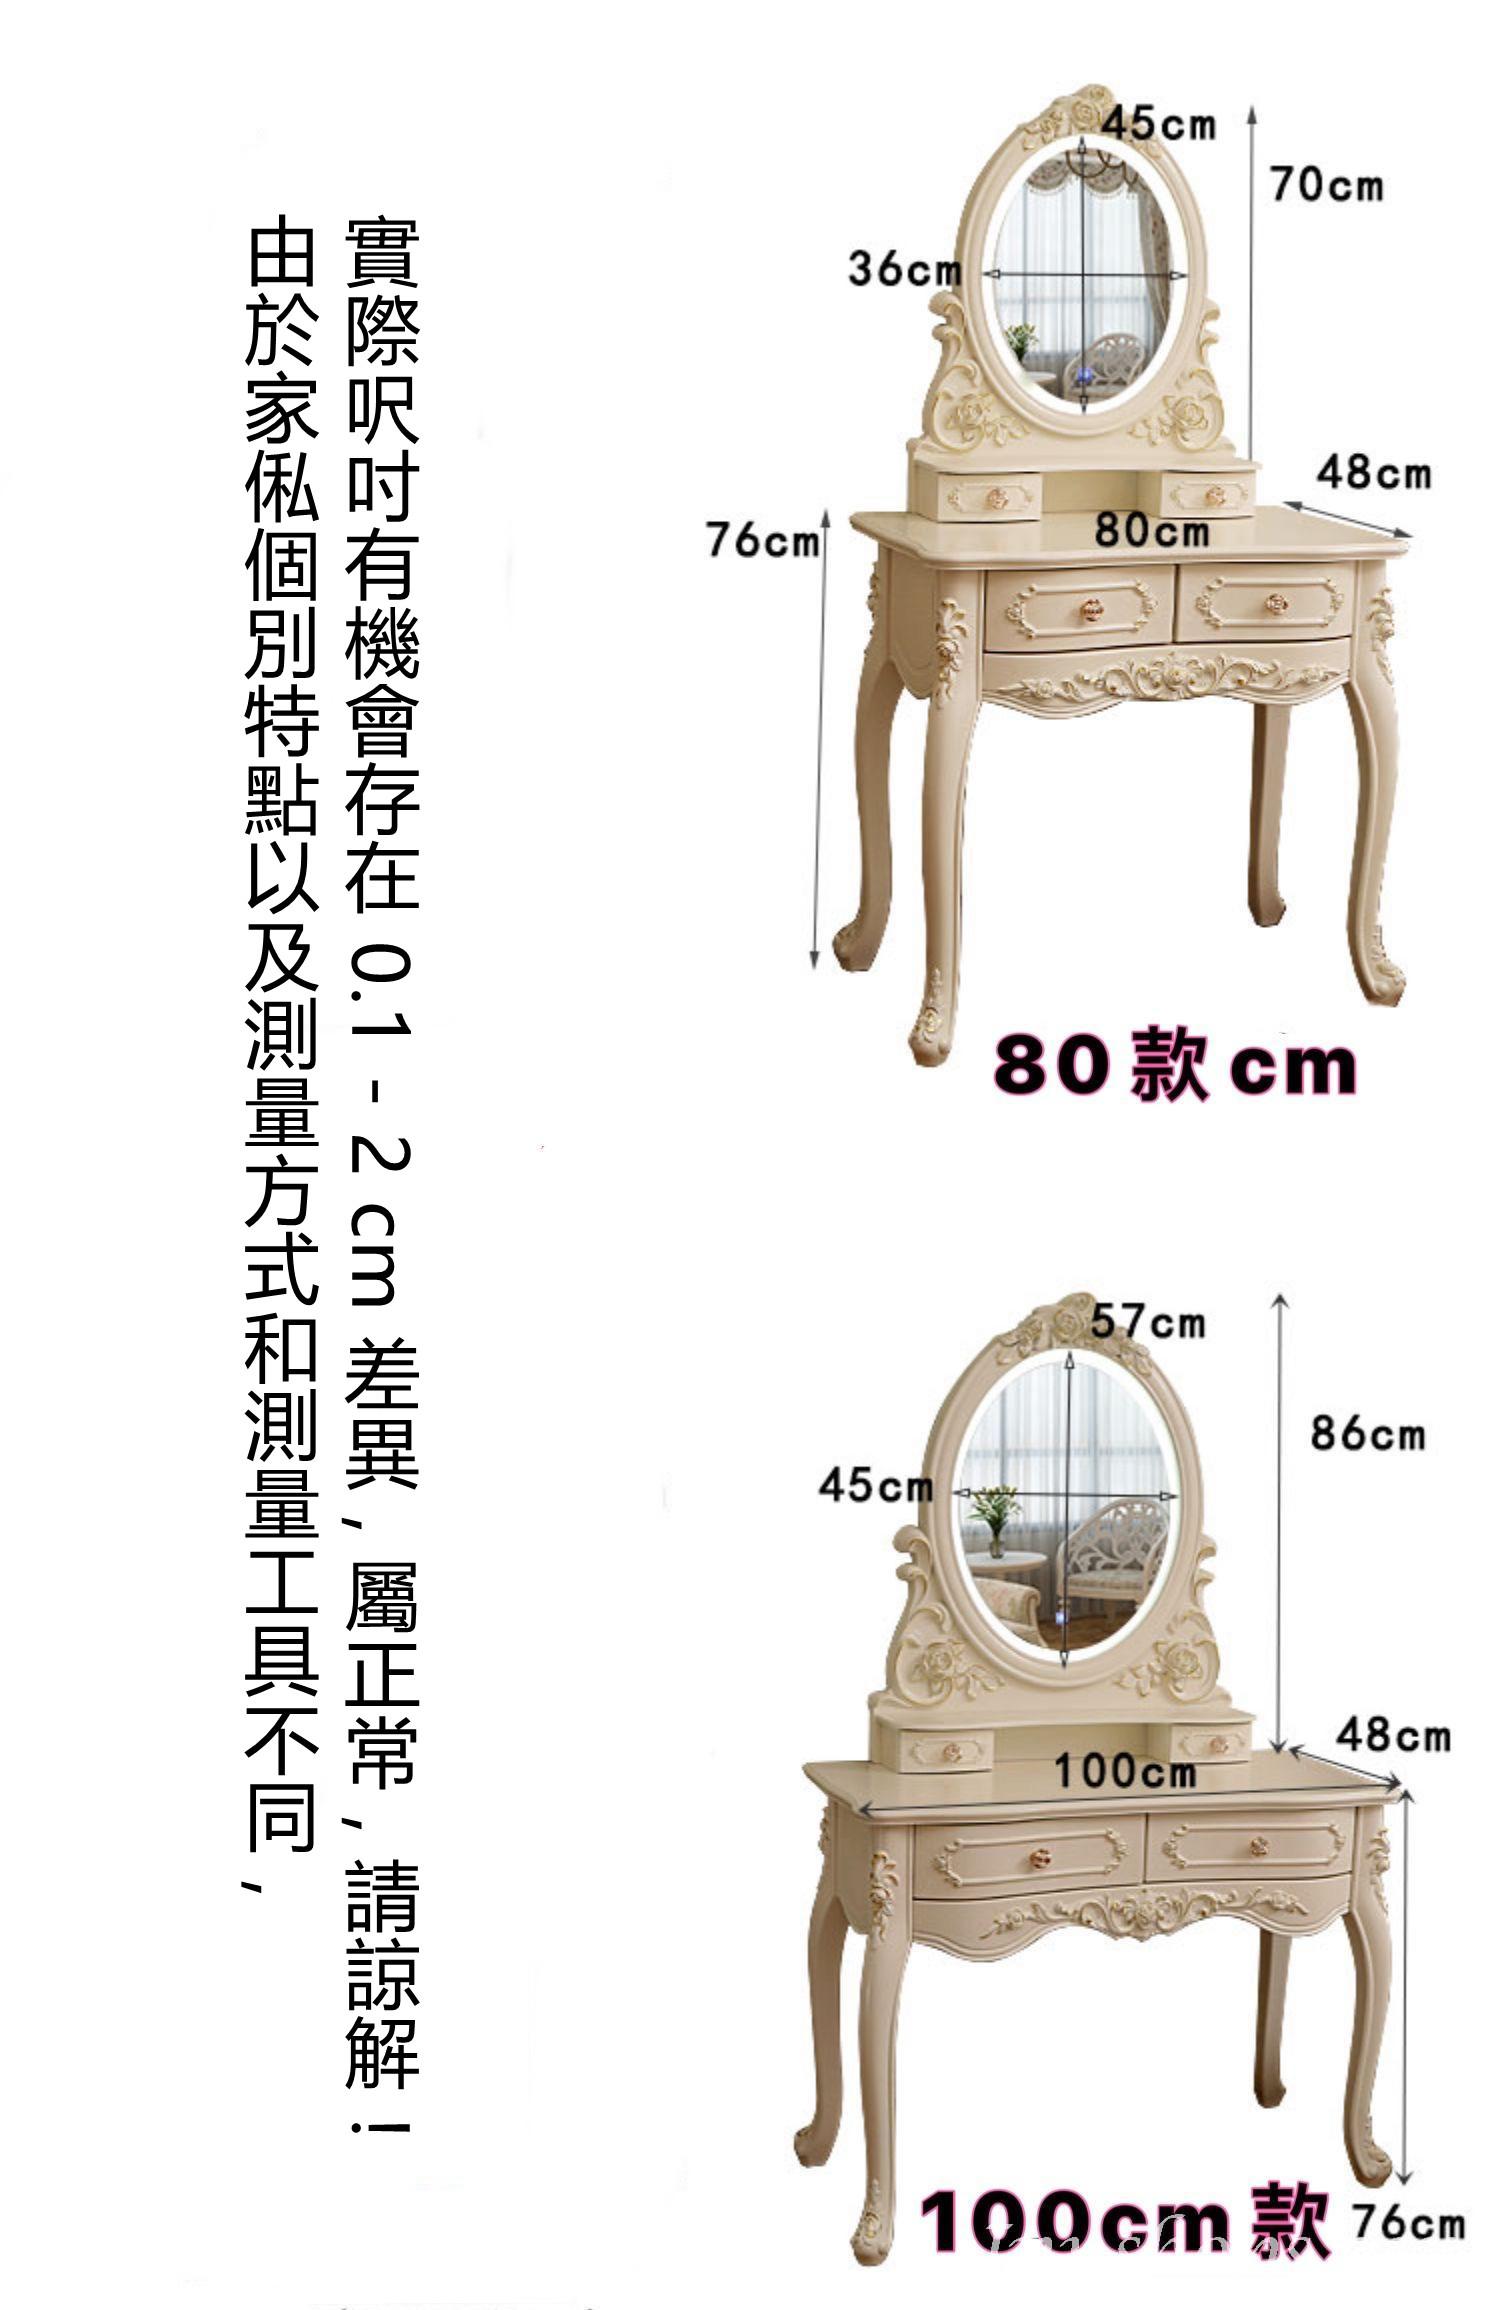 維也納 實木雕花描金玫瑰圓鏡梳妝台 連凳 60cm/70cm/80cm/90cm/100cm (IS3105)